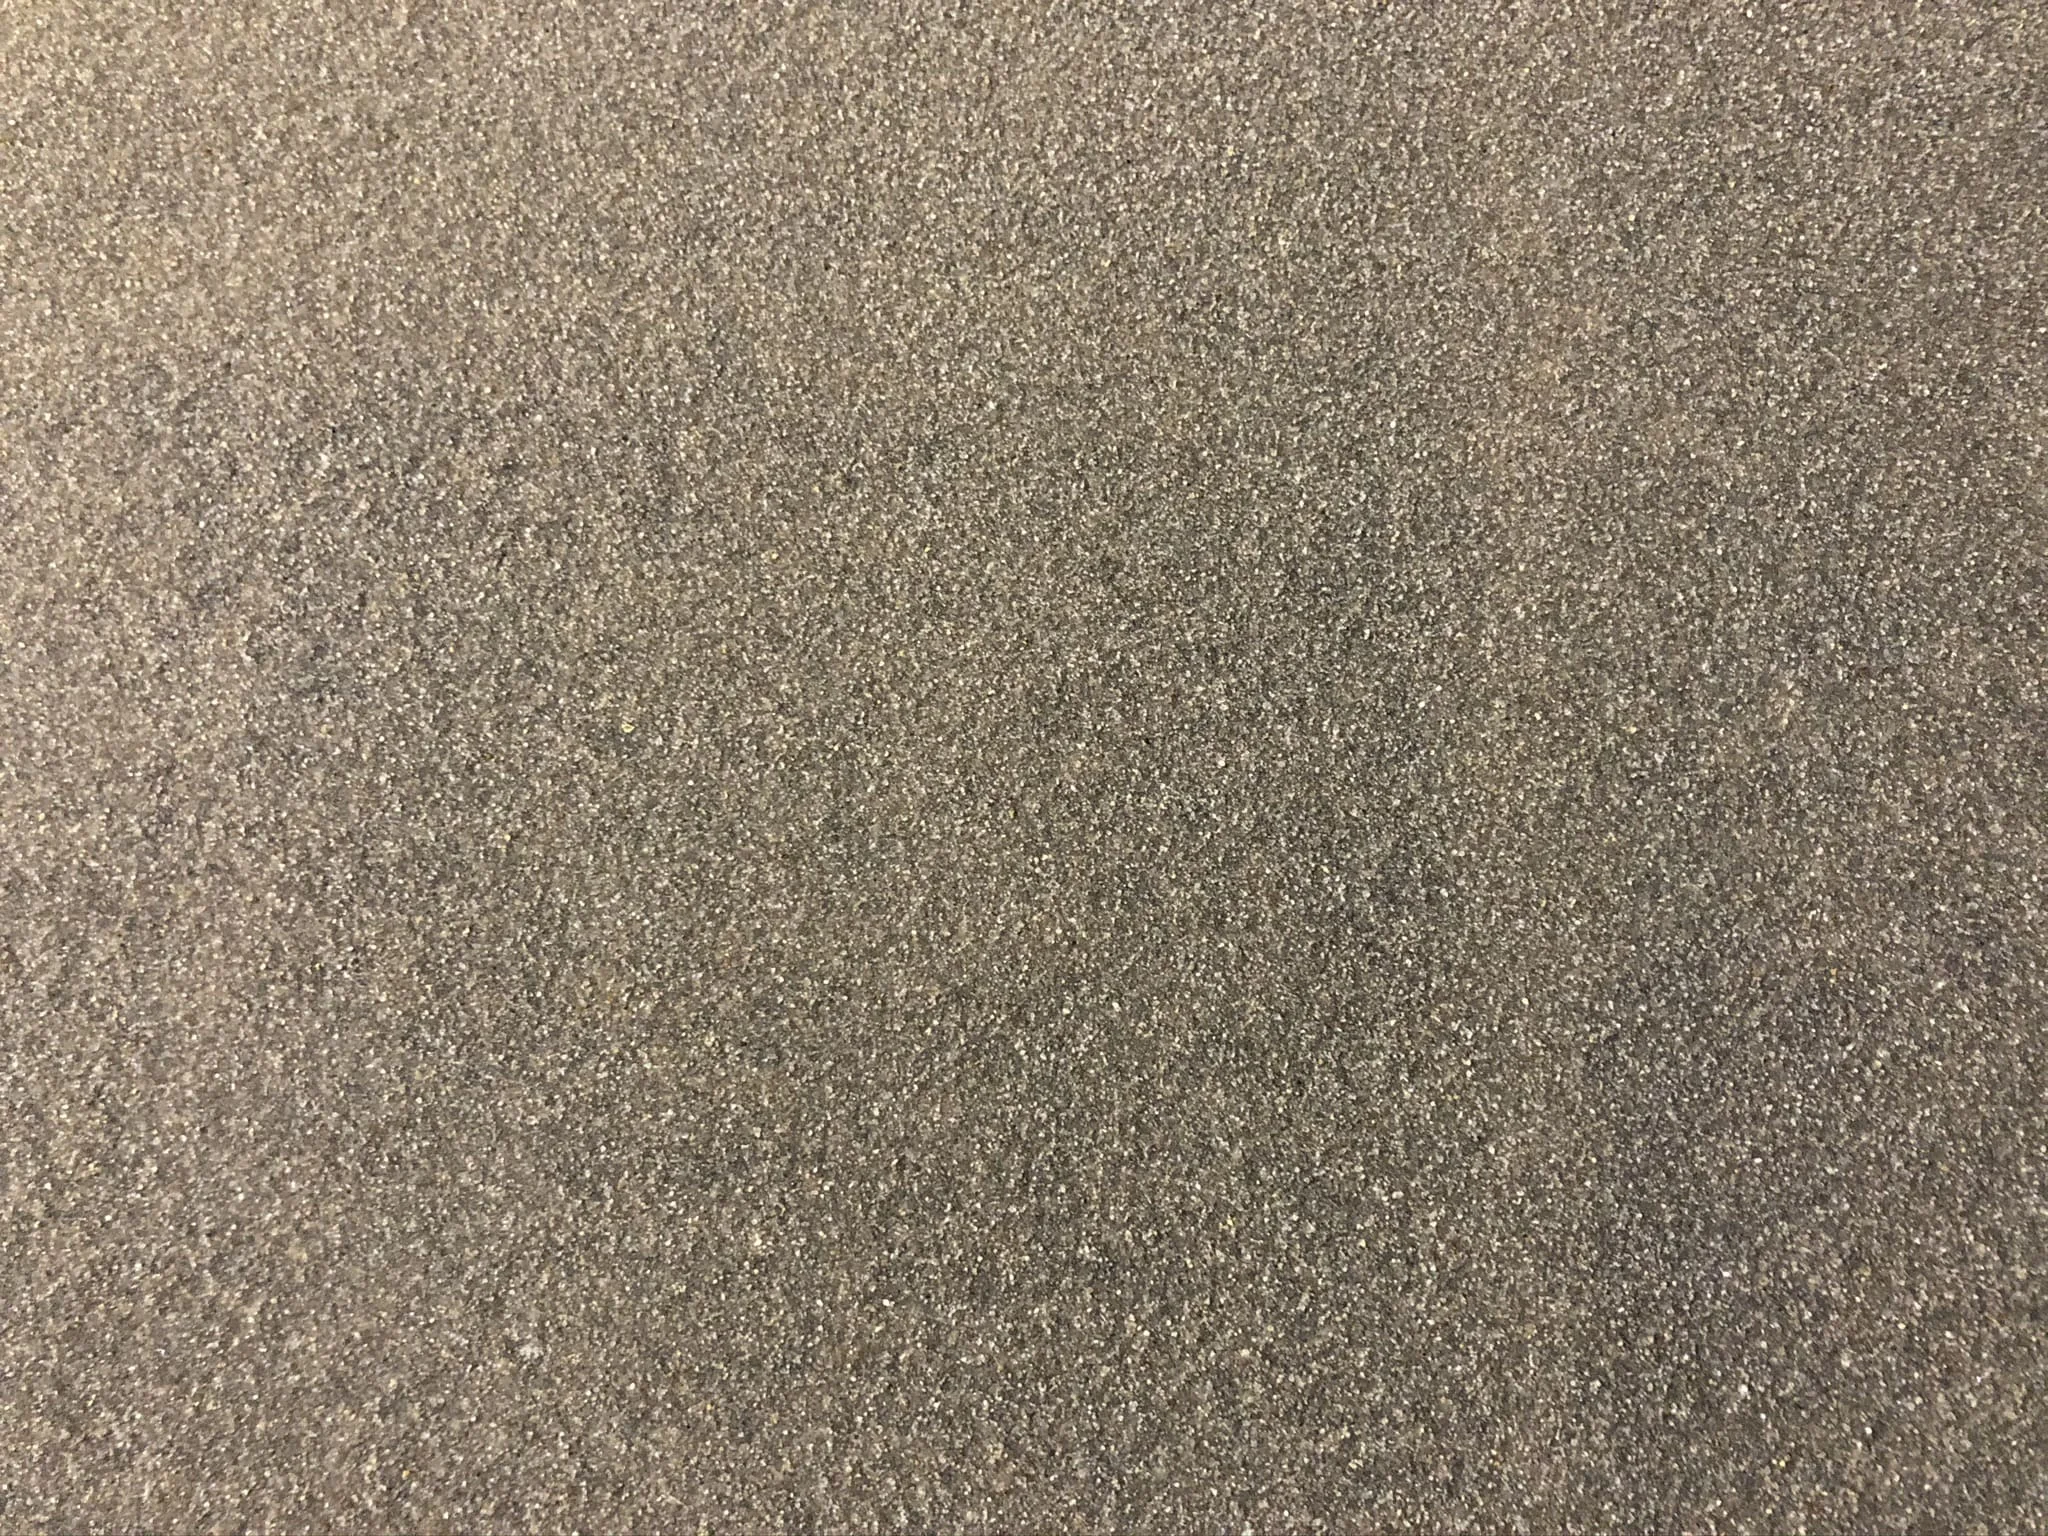 Anti-slip epoxy floor